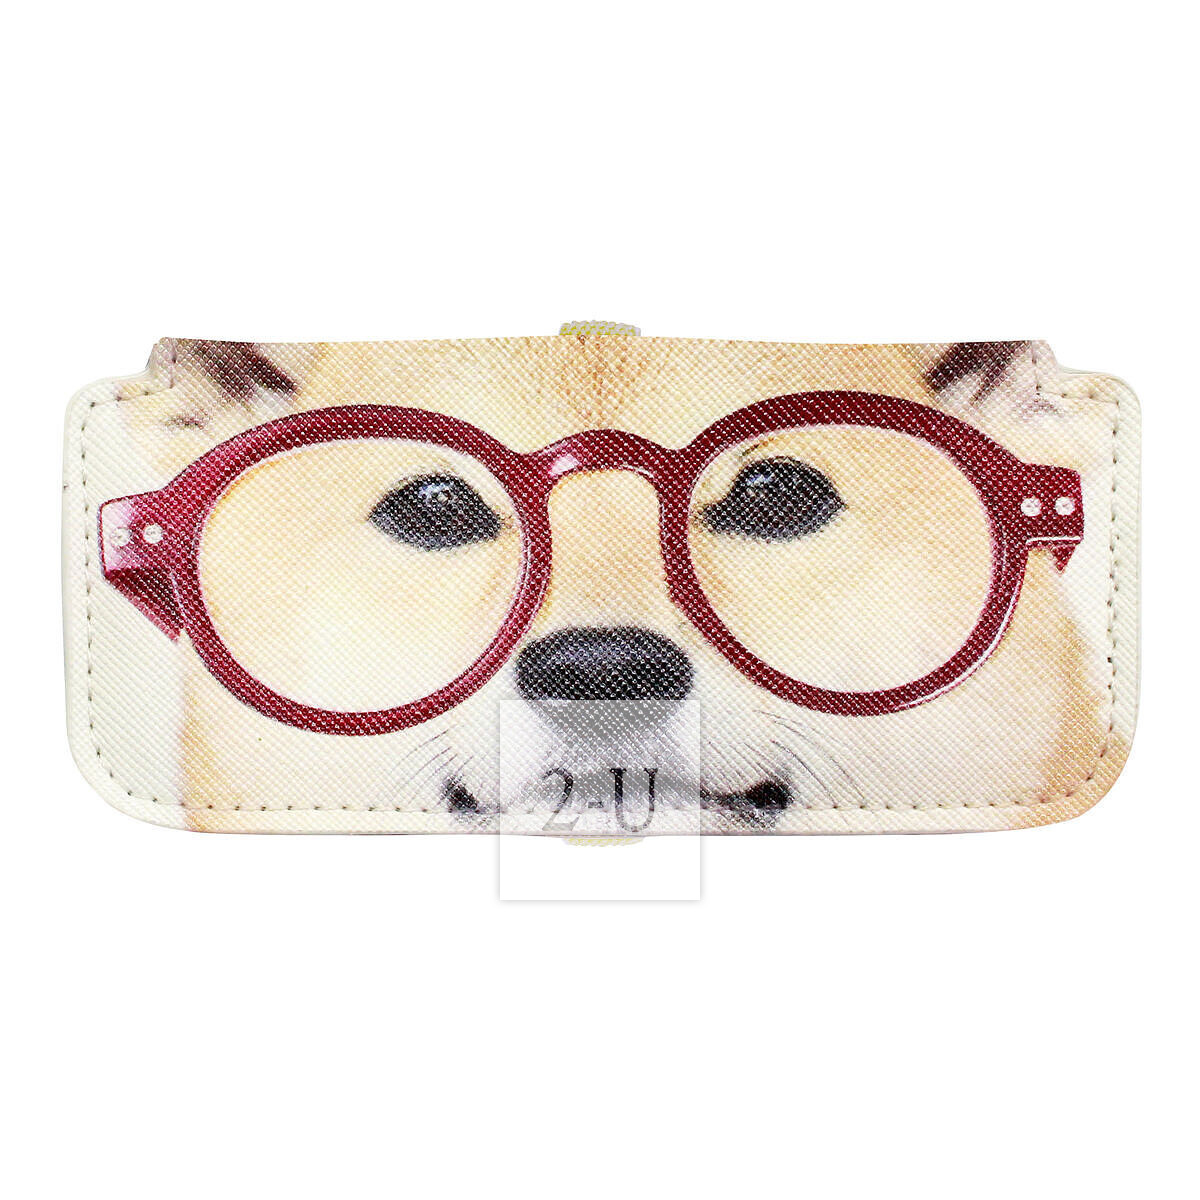 小巧眼鏡盒 動物圖案之柴犬